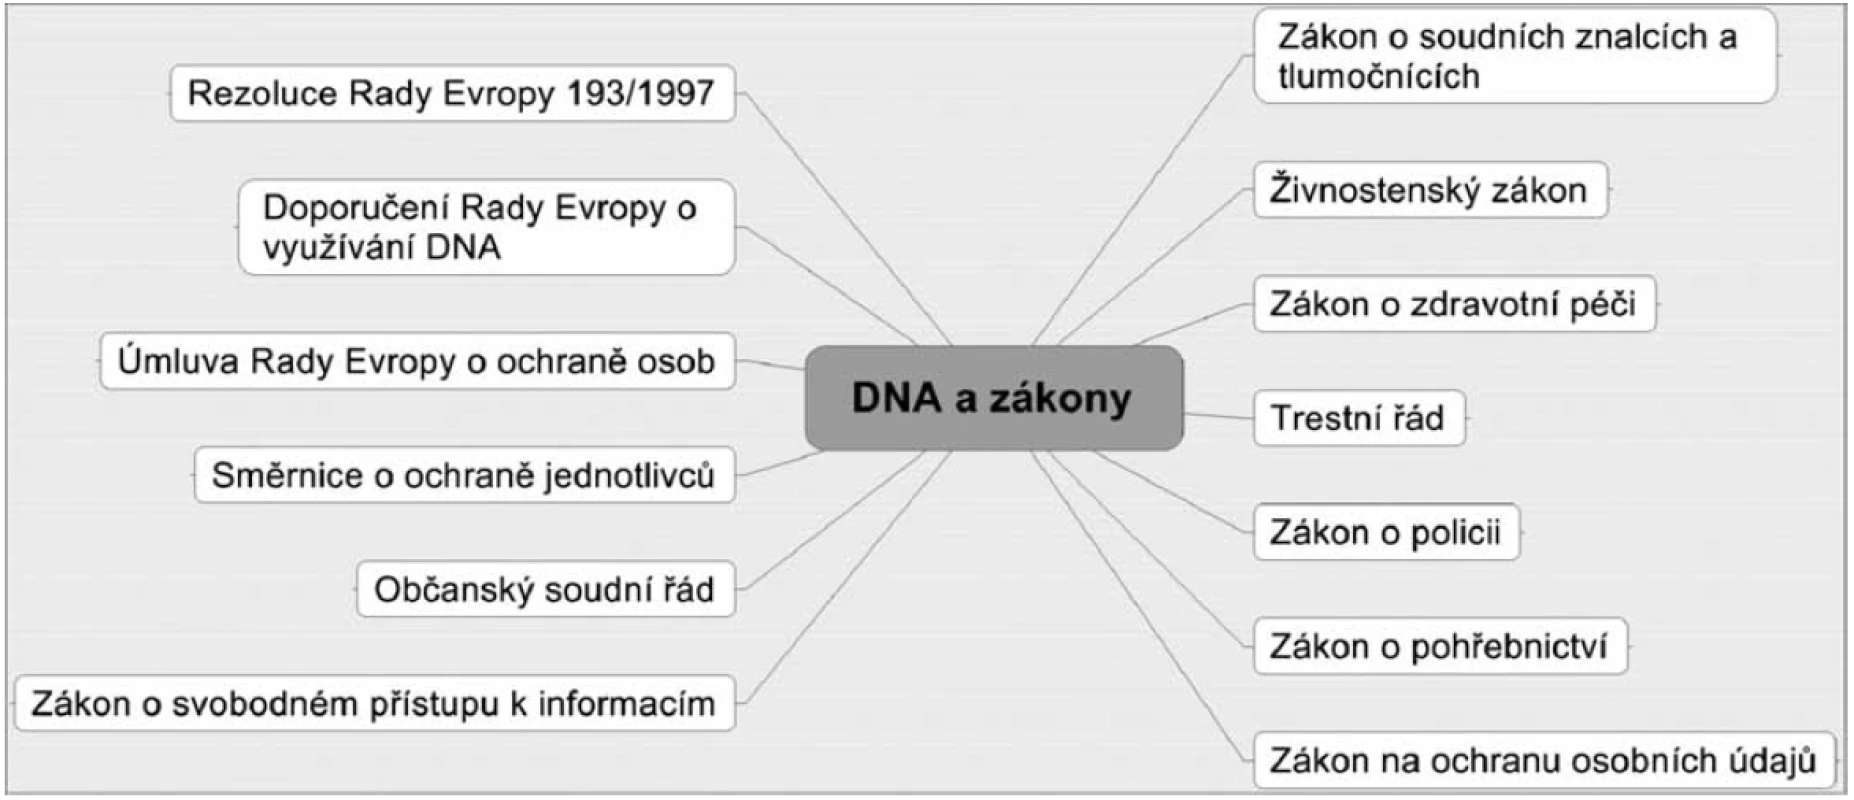 Zákony týkající se DNA oblasti v České republice